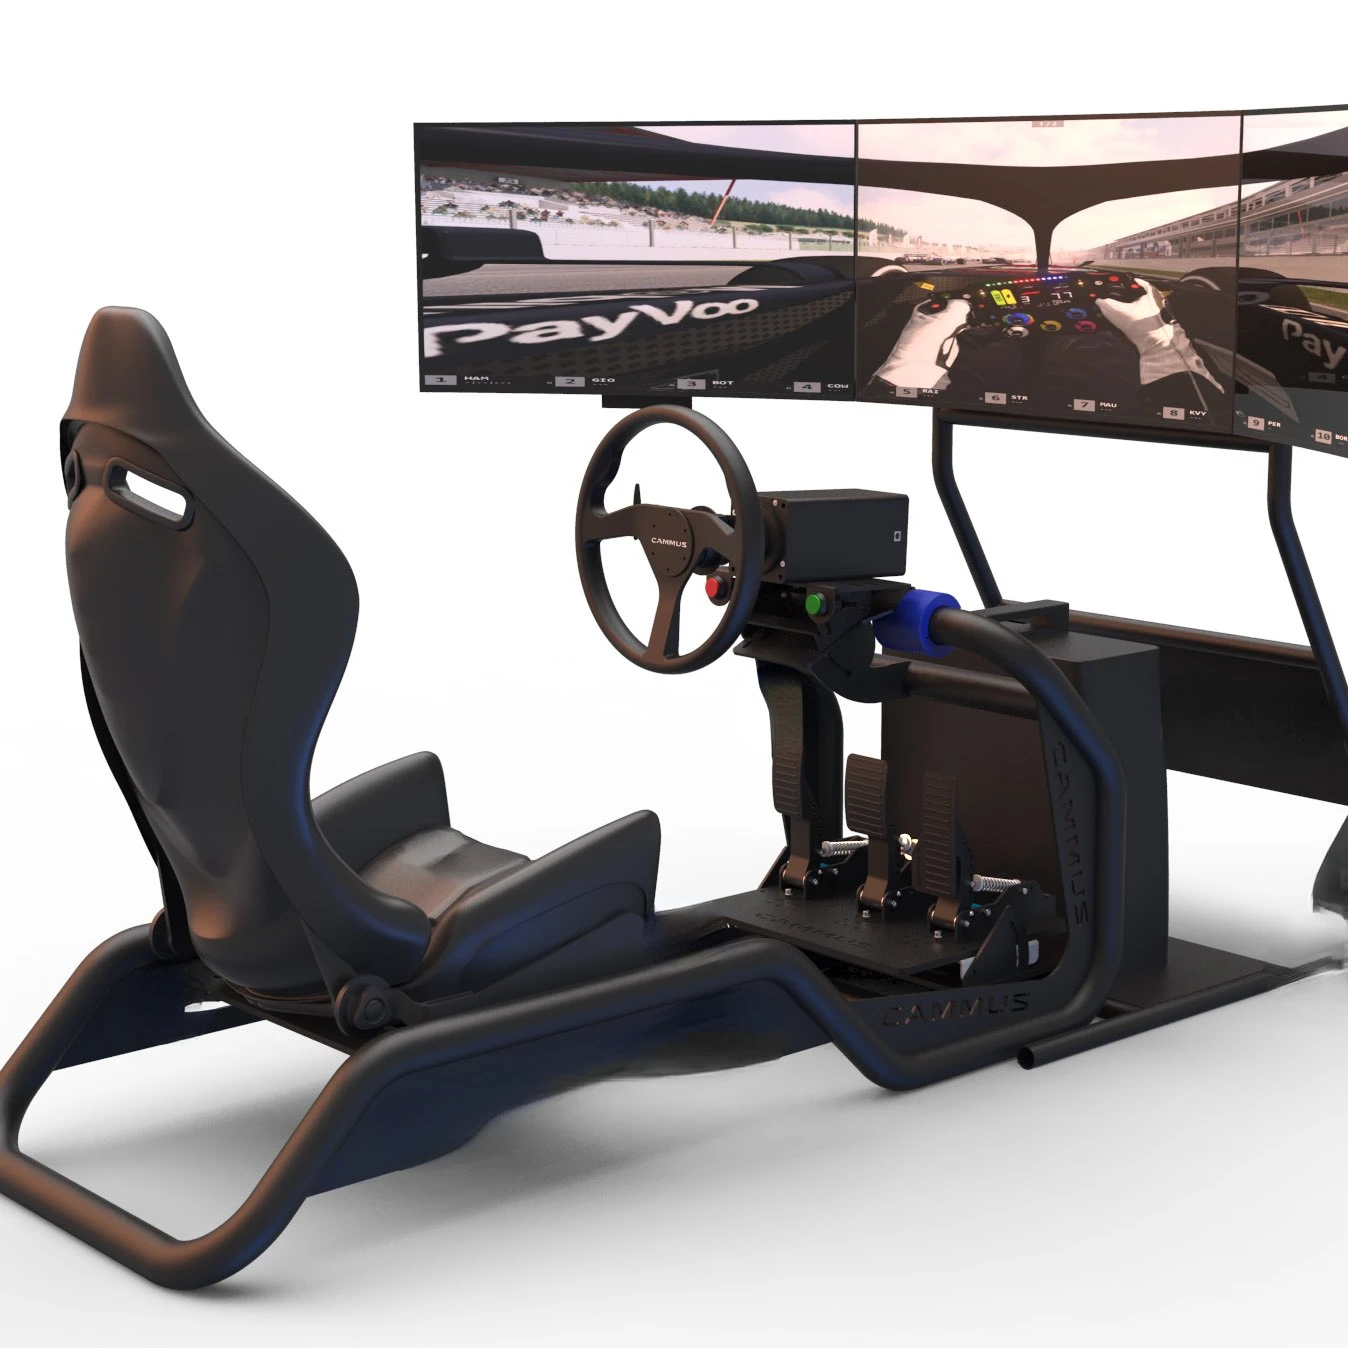 SimuFun simulateurs de courses automobiles